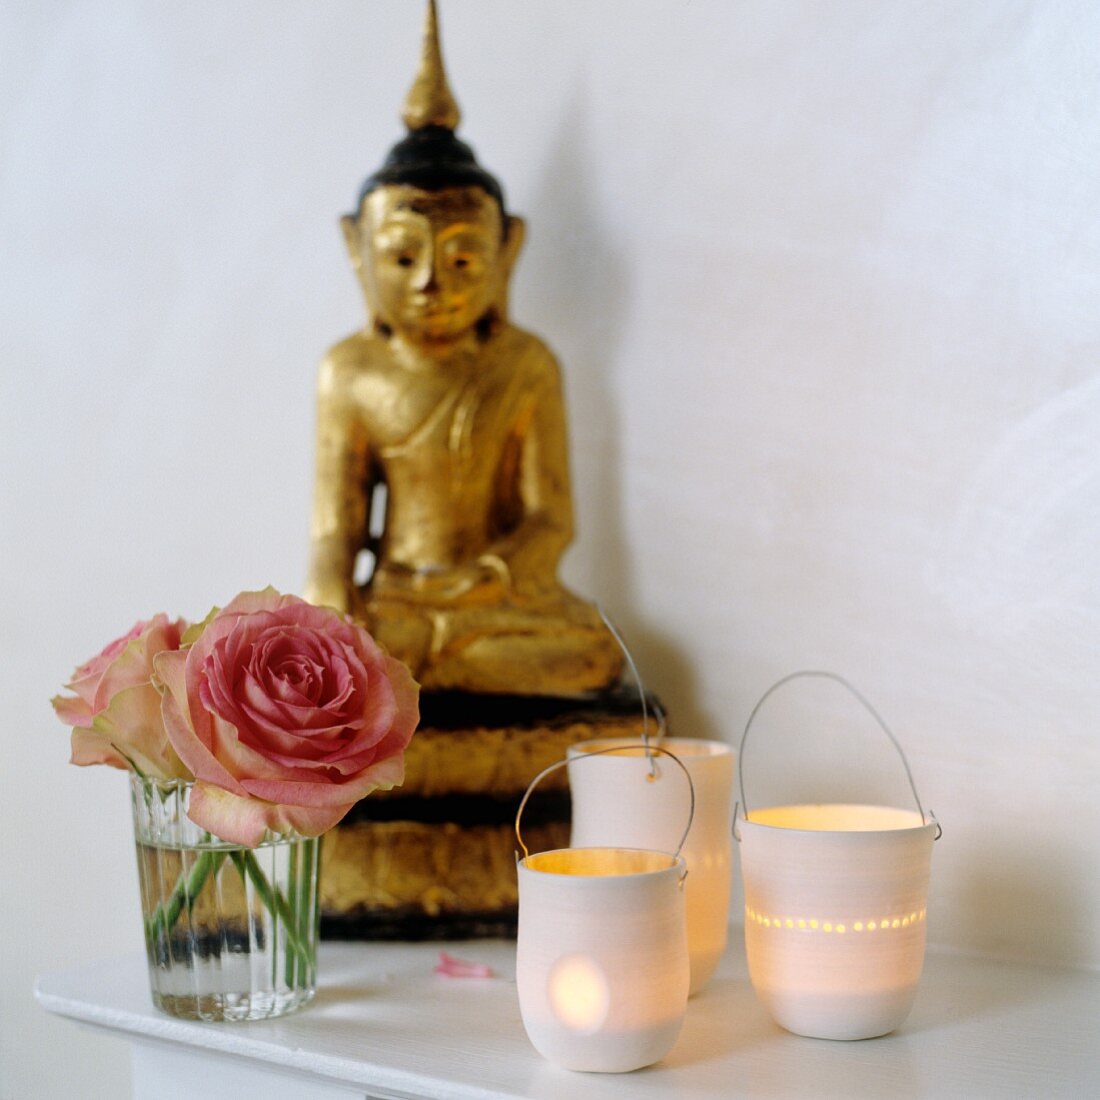 Leuchtende Windlichter neben Rosen im Glas und vergoldete Buddhafigur auf Ablage